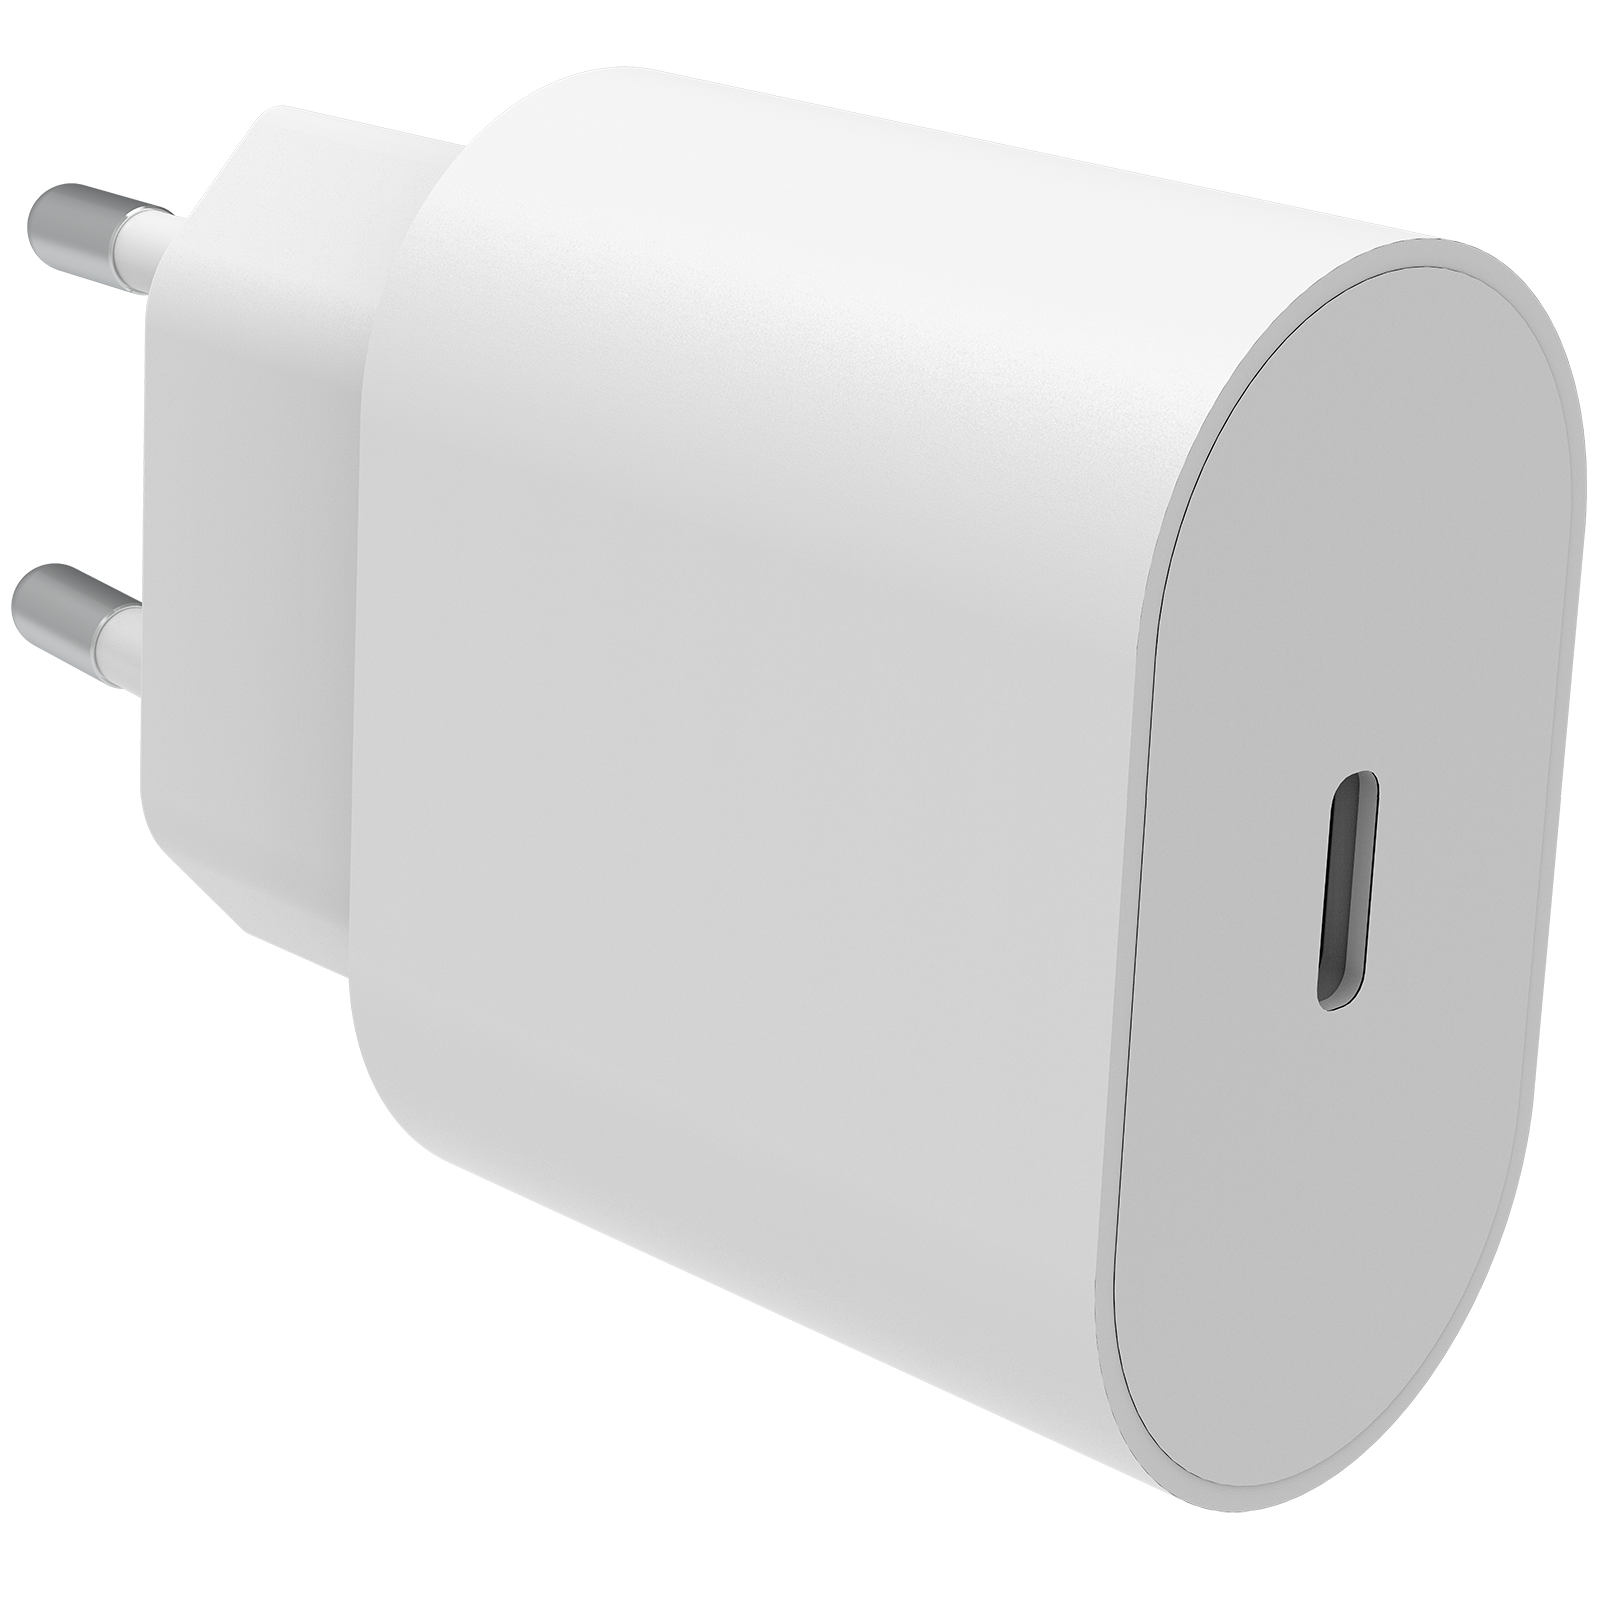 iPhone SE (2020) Kit för optimal laddning med 2m kabel, vit